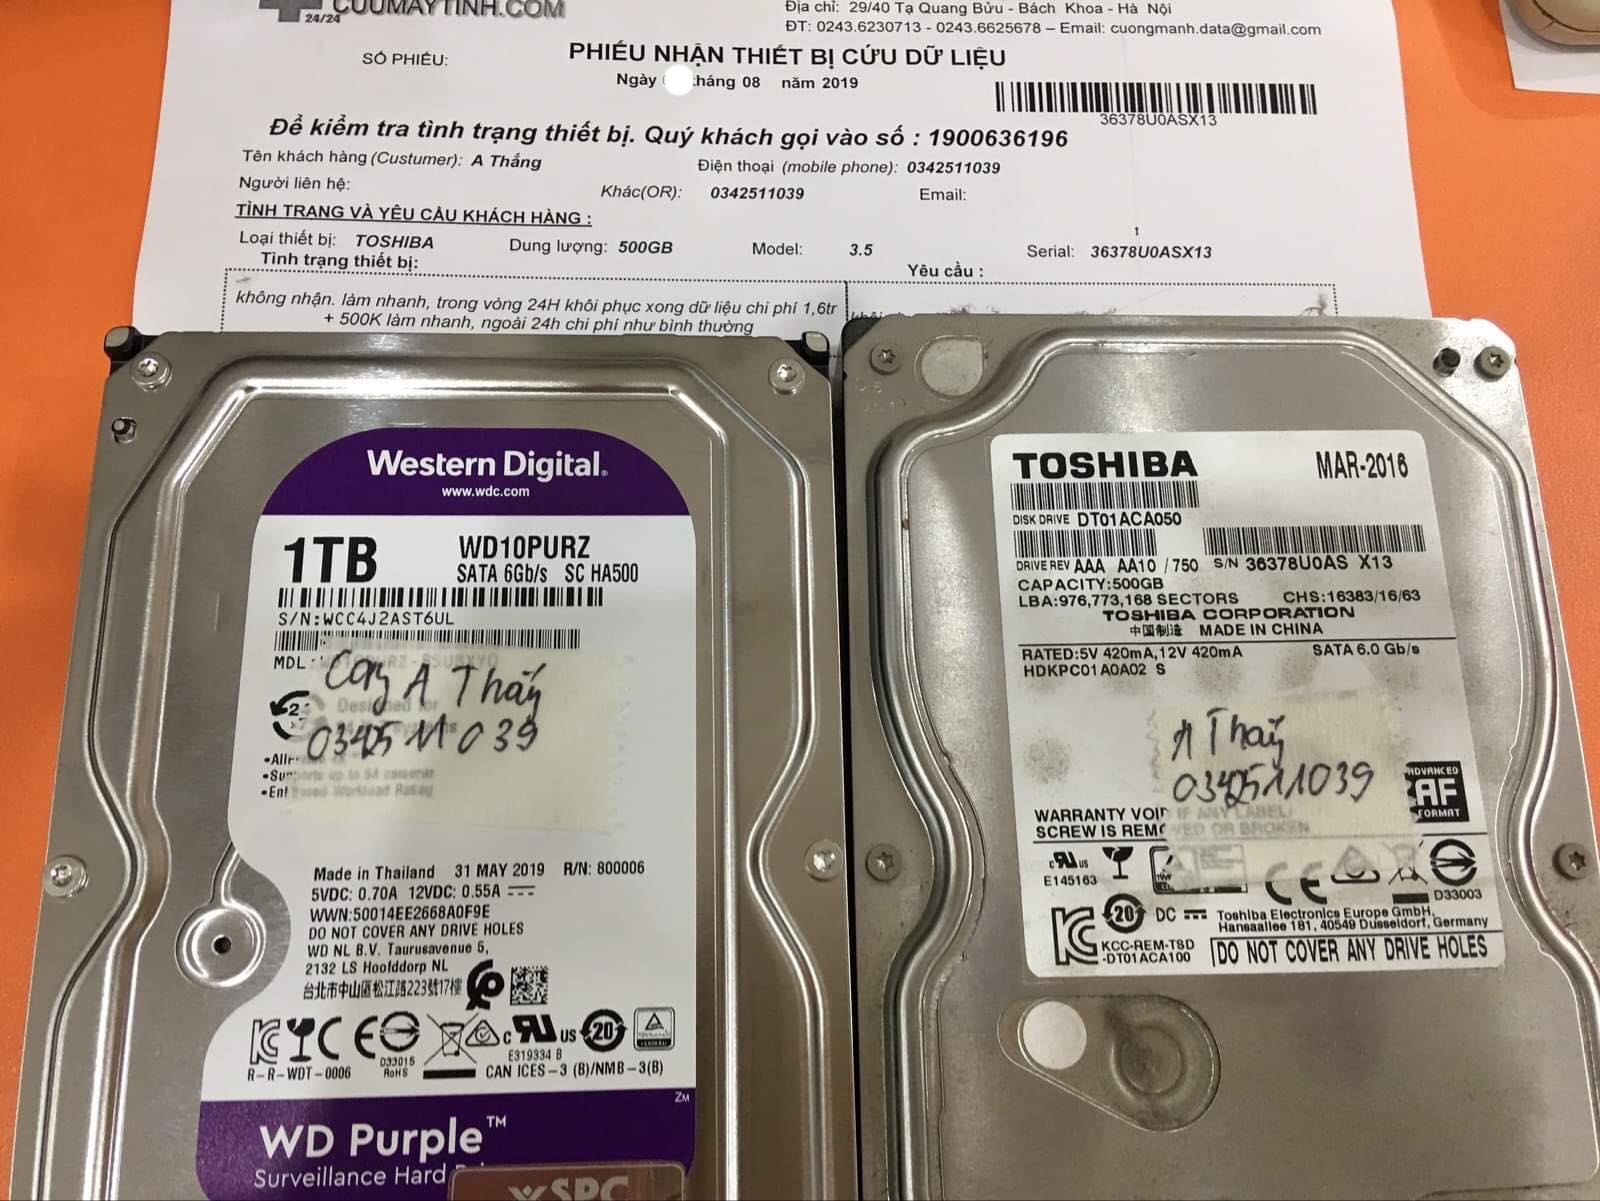 Cứu dữ liệu ổ cứng Toshiba 500GB không nhận 12/08/2019 - cuumaytinh